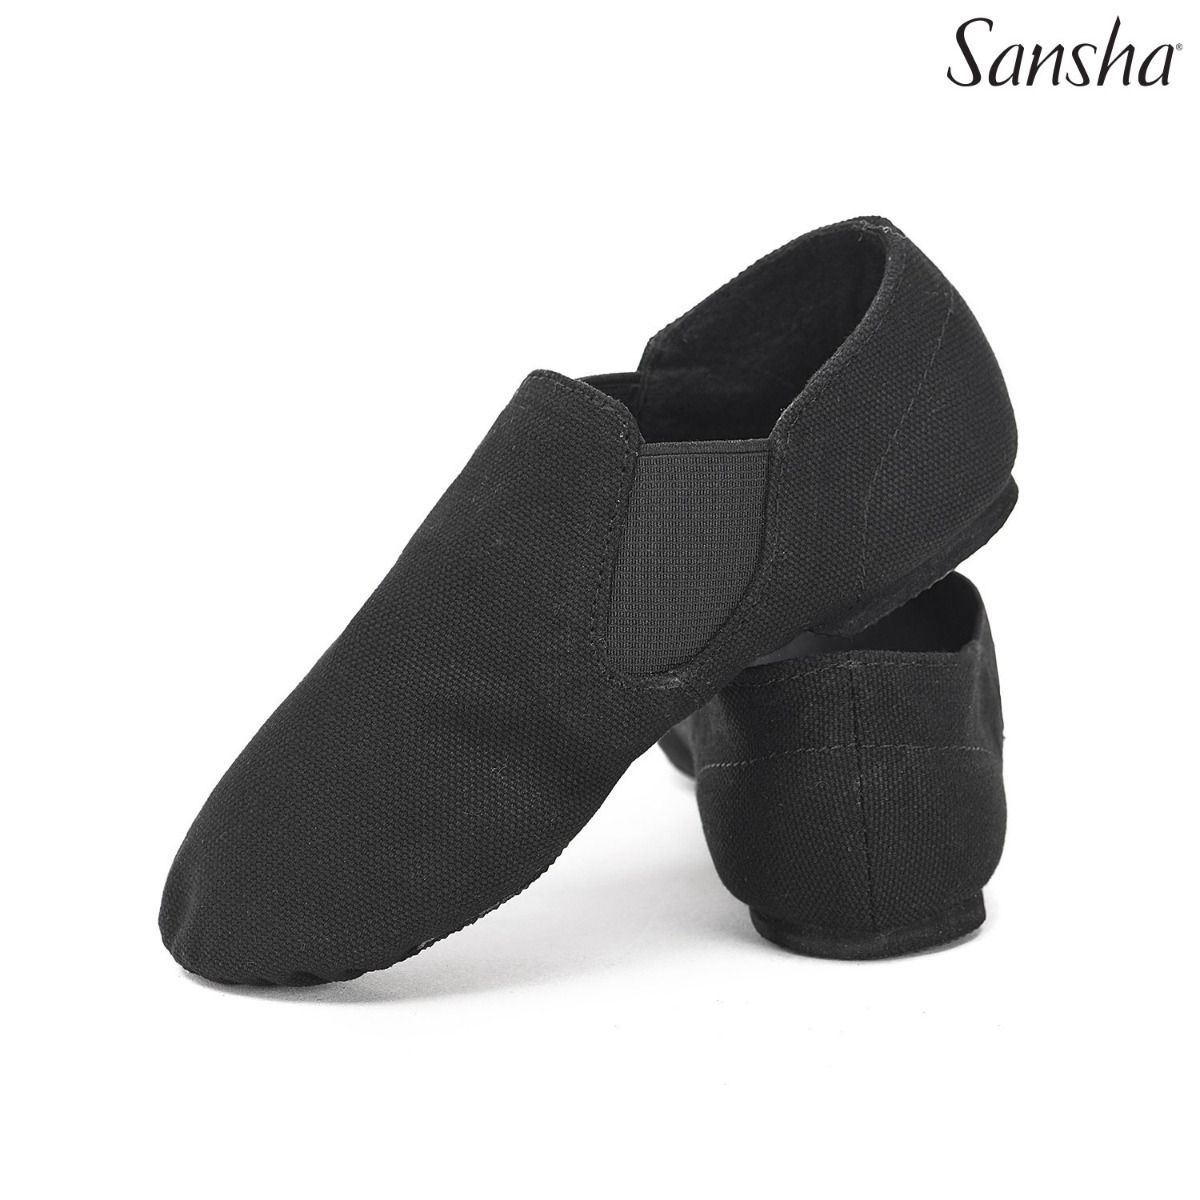 Buty treningowe dziecięce Sansha model Modernette